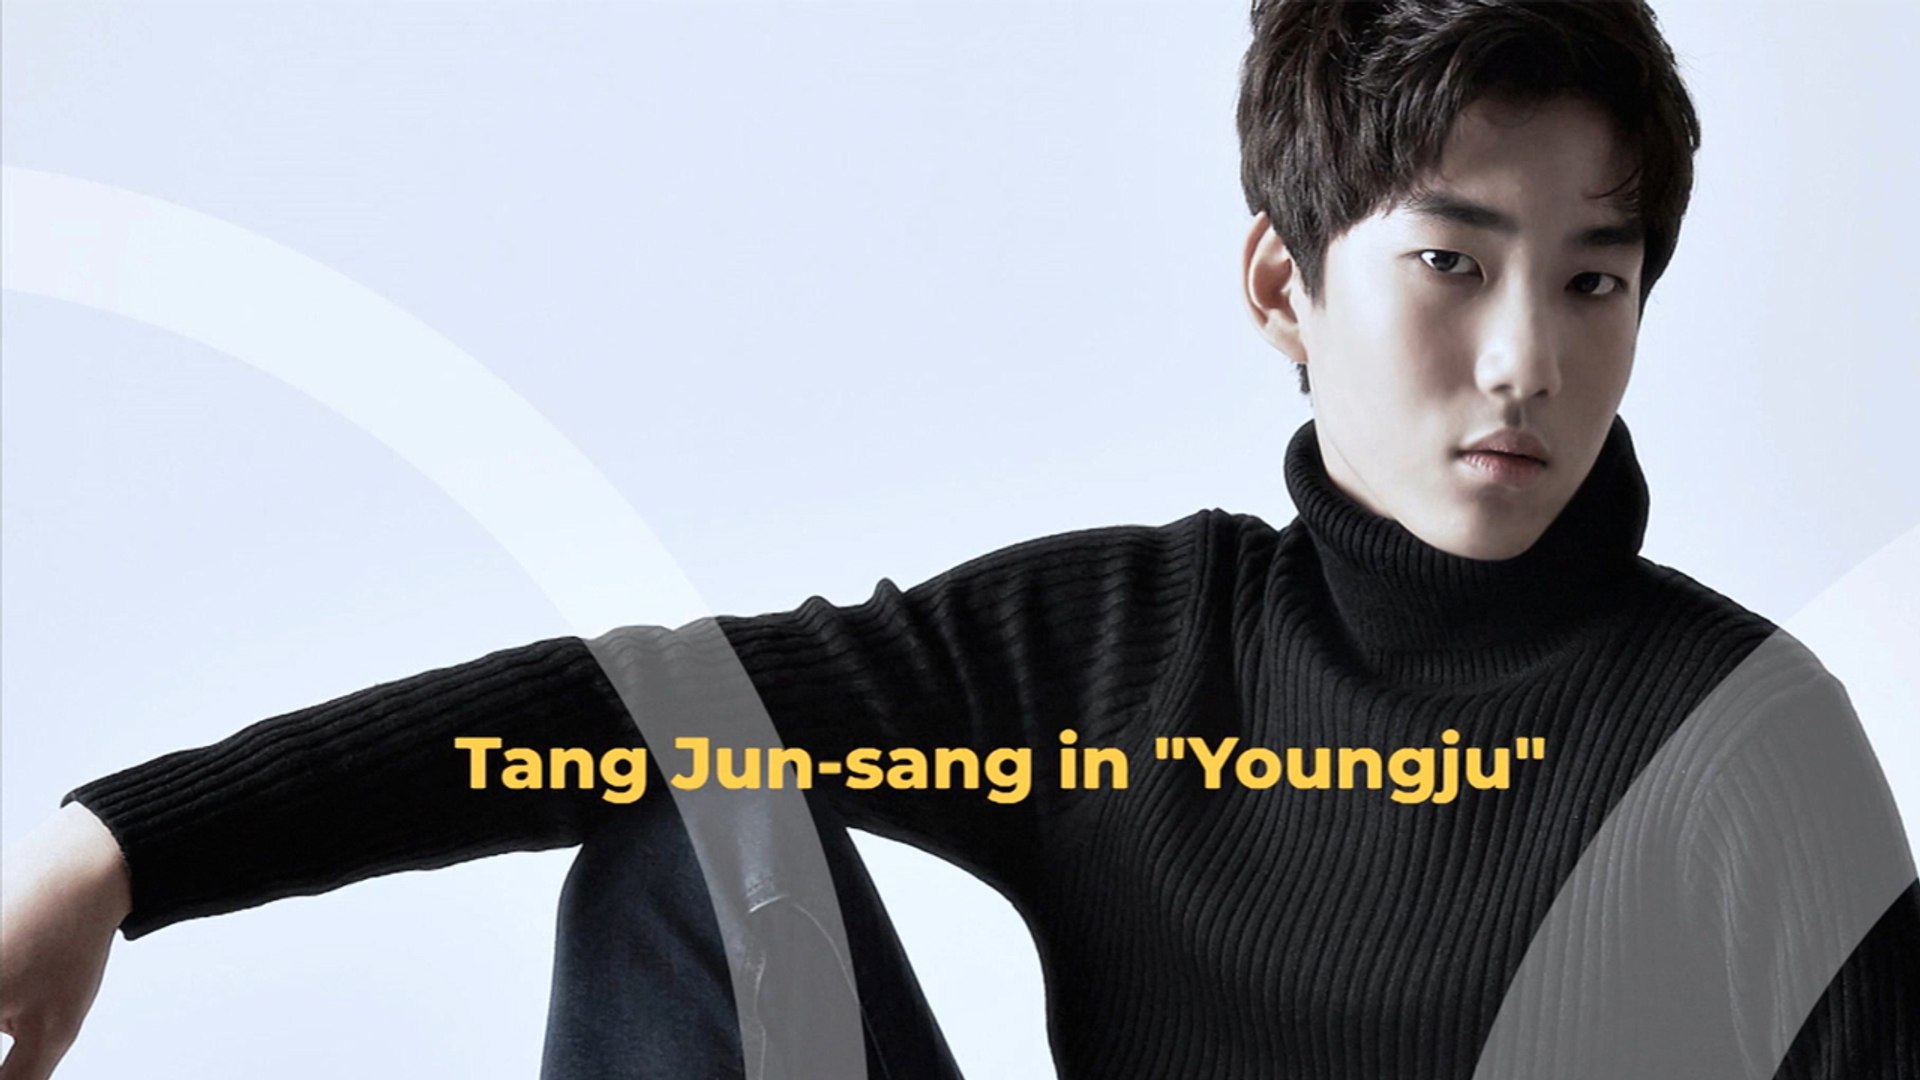 Joon-sang tang Tang Joon